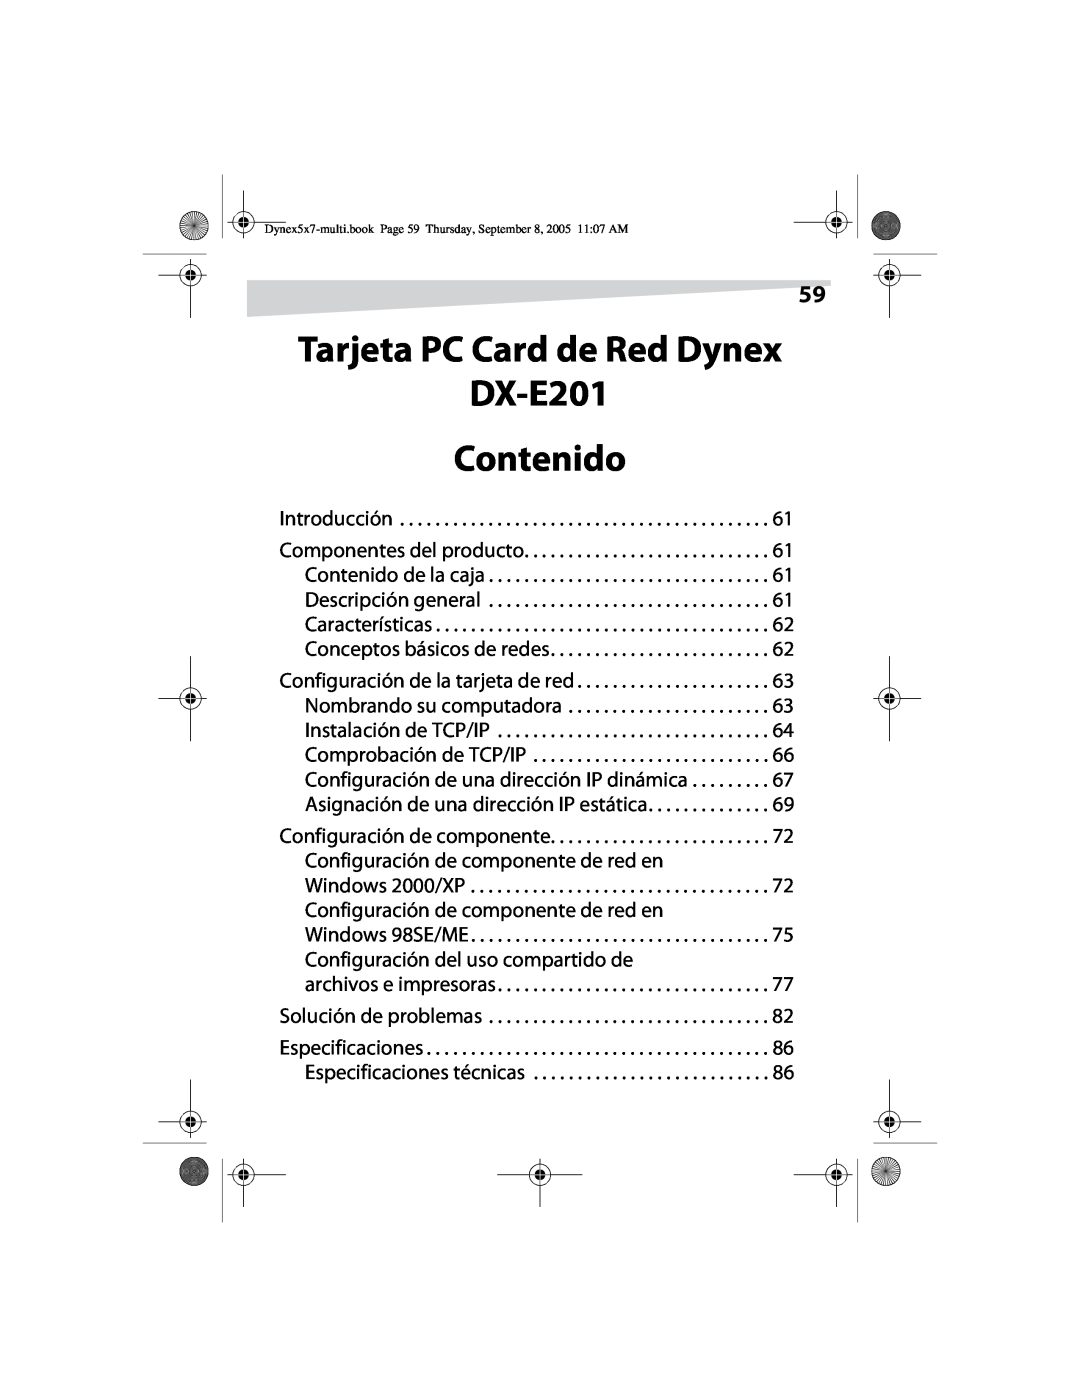 Dynex manual Tarjeta PC Card de Red Dynex DX-E201 Contenido, Introducción, archivos e impresoras Solución de problemas 